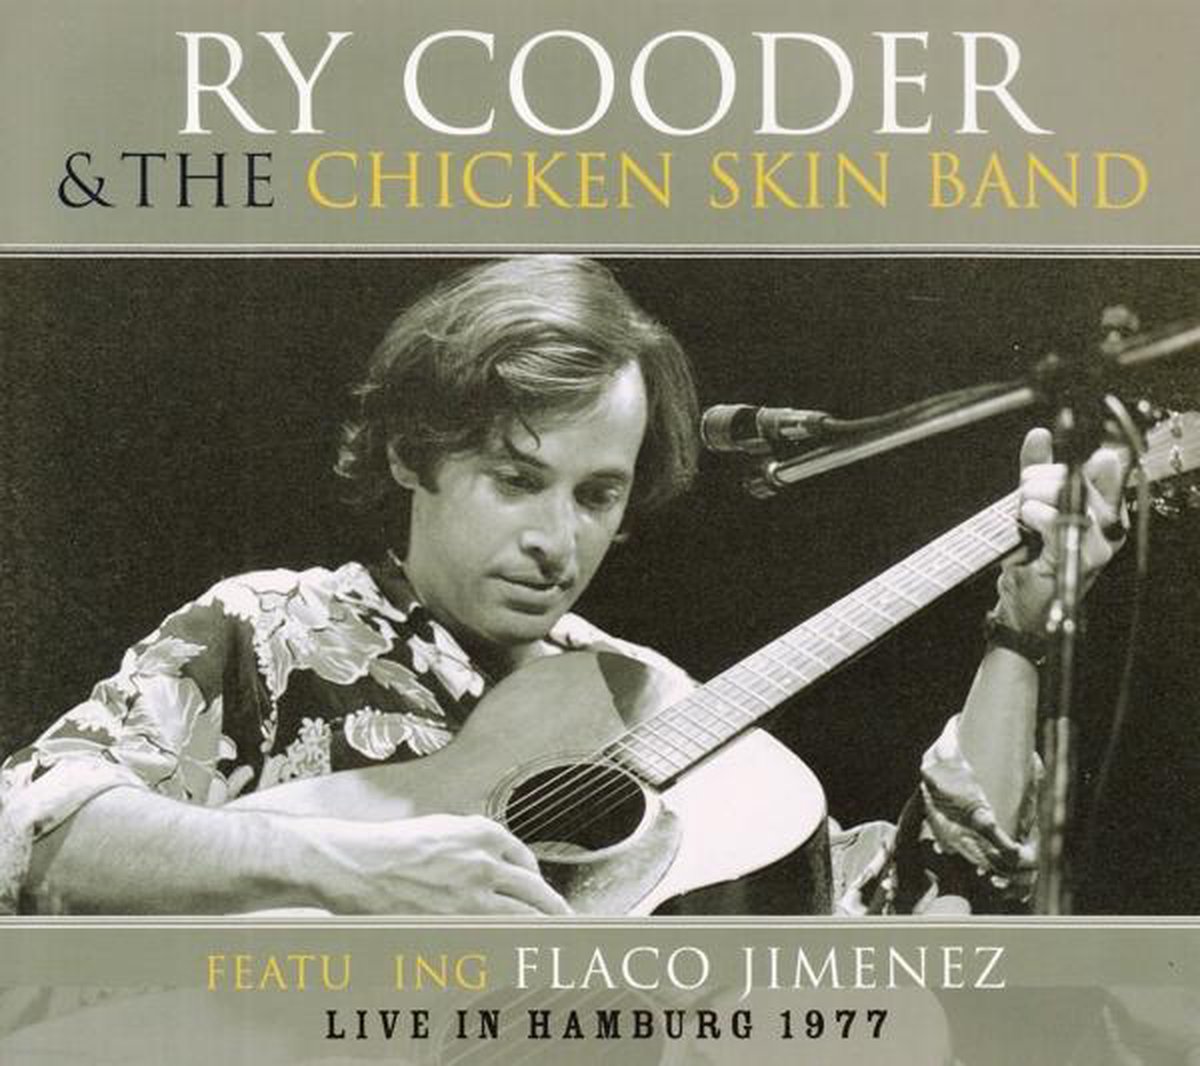 Live in Hamburg 1977 - Ry Cooder & The Chicken Skin Band